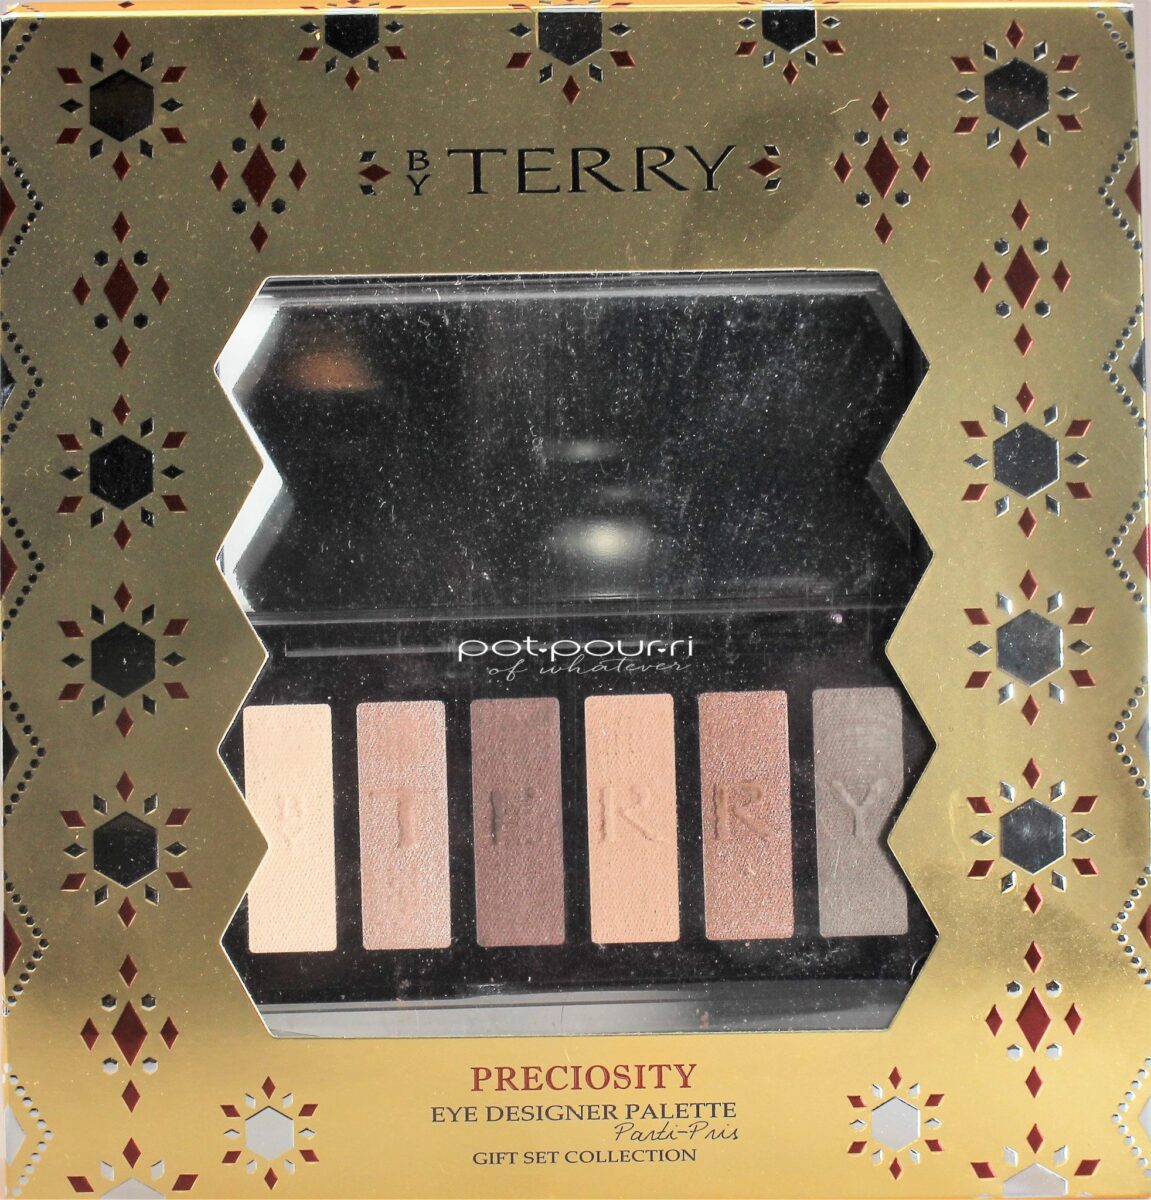 Preciosity Eye Designer Palette gift packaging